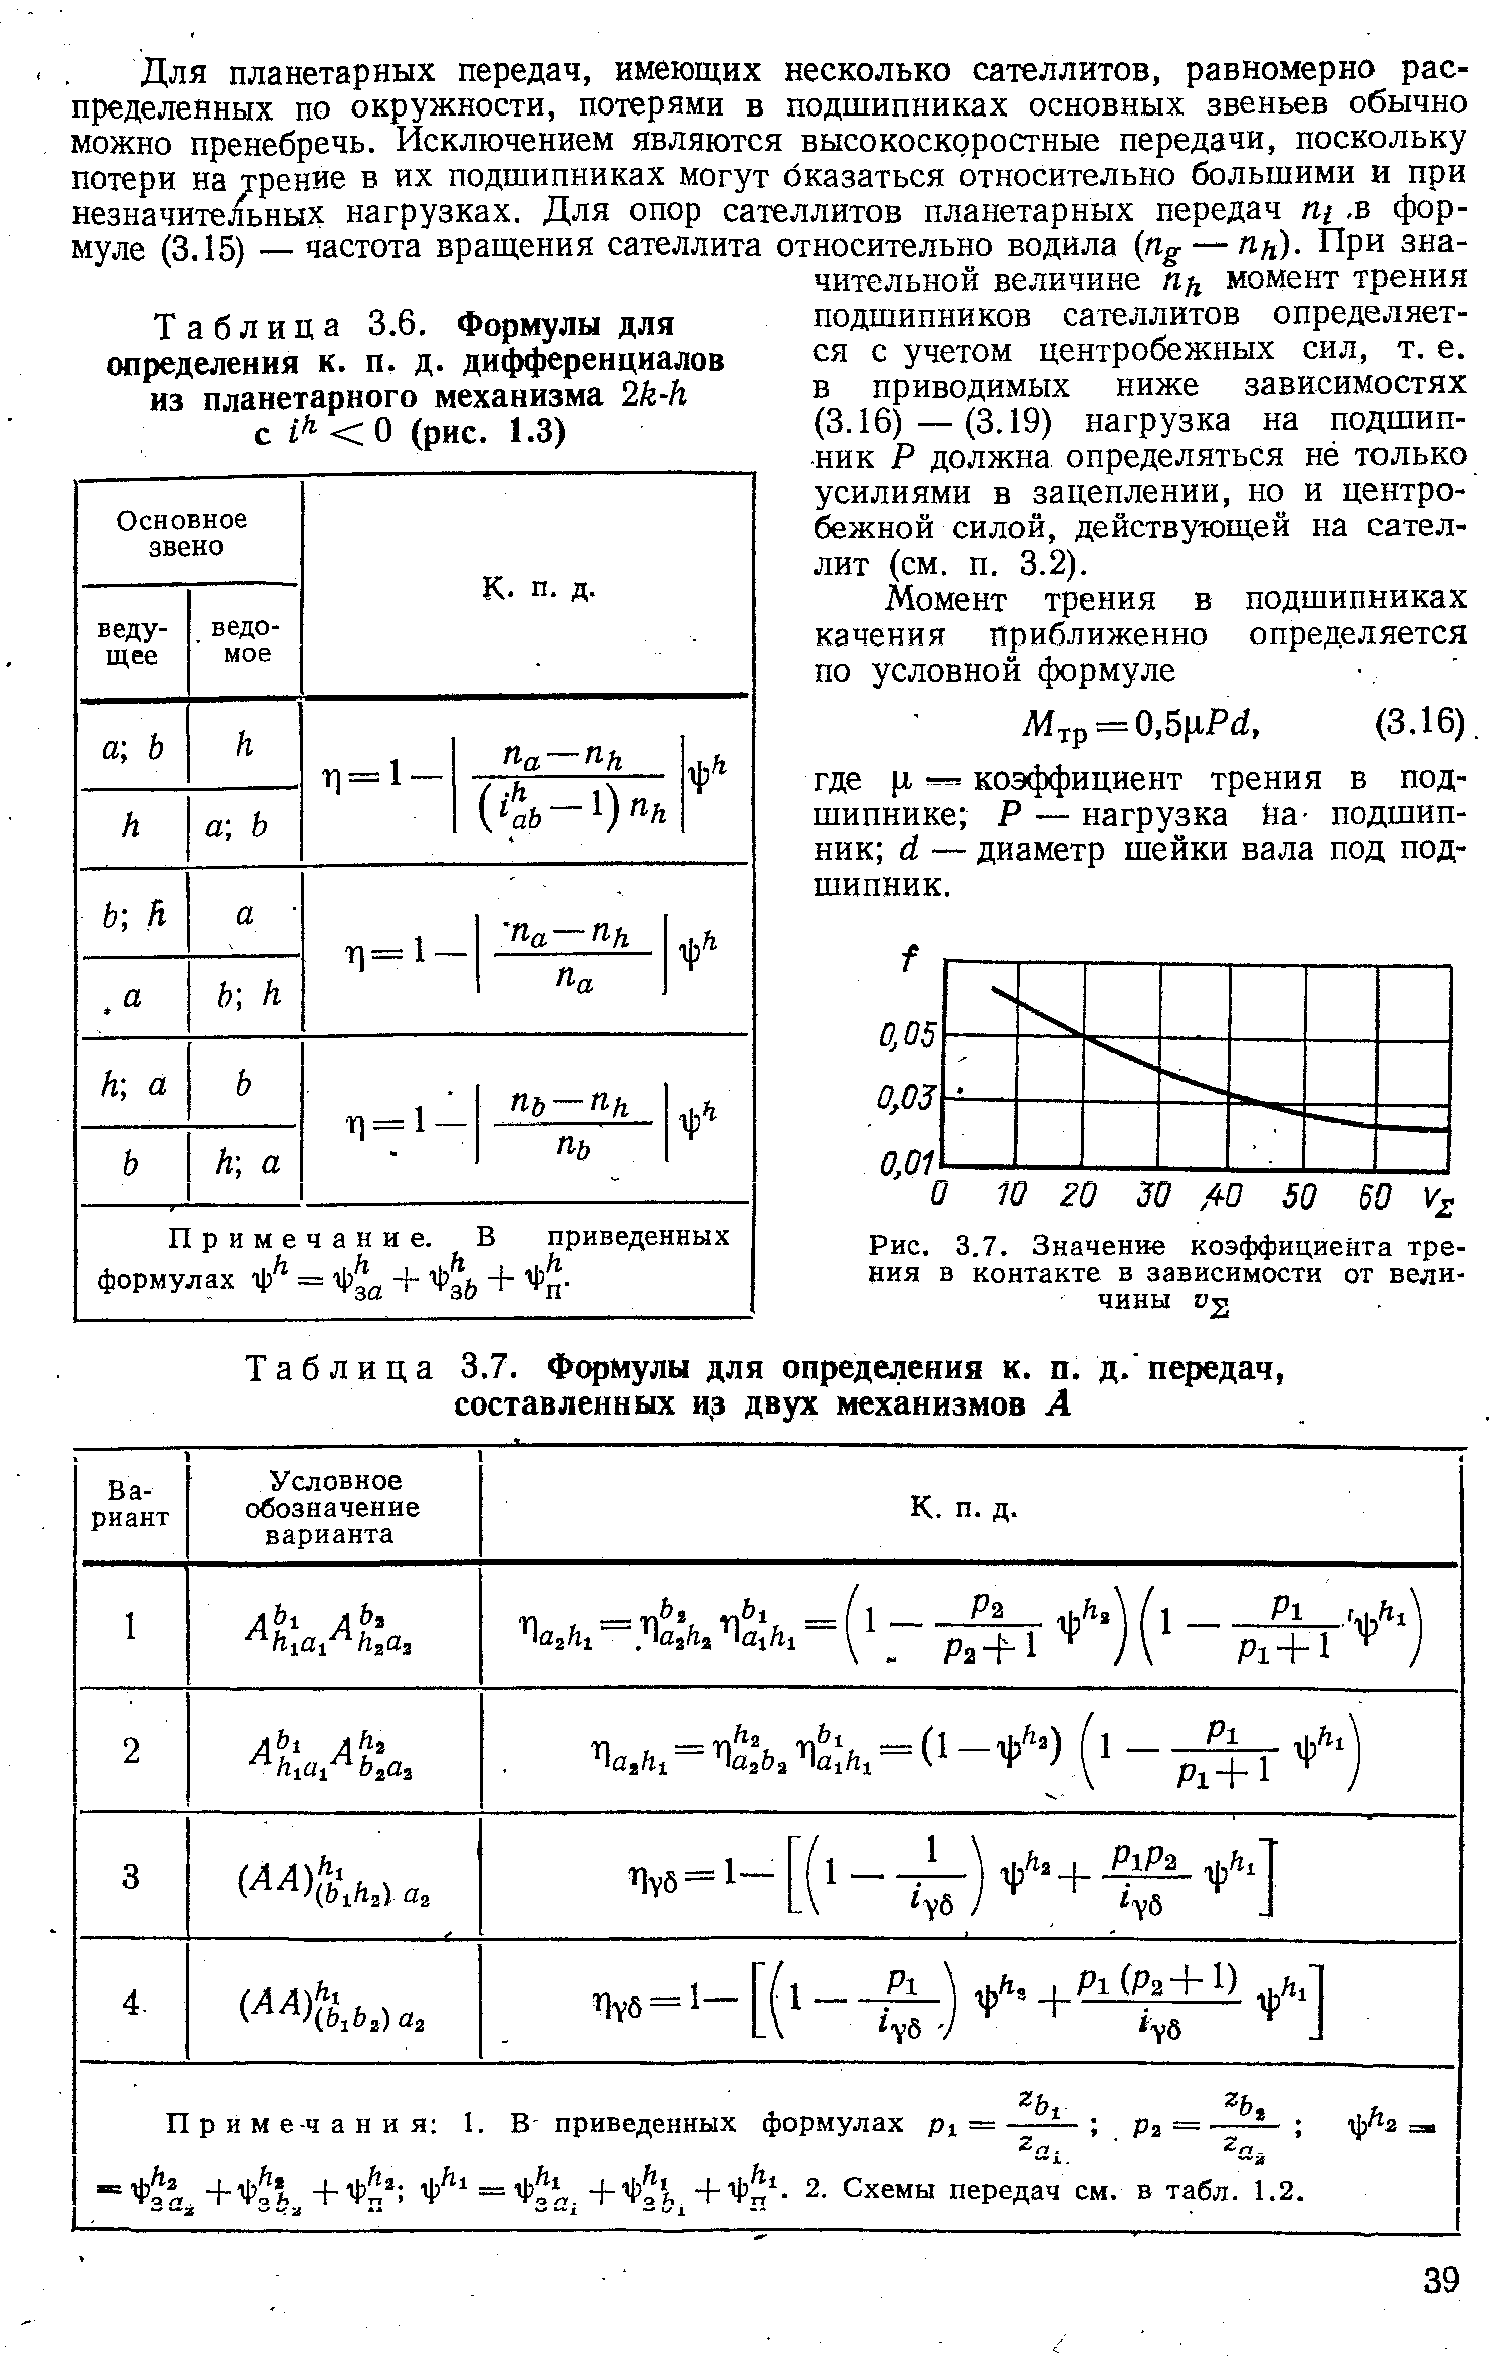 Таблица 3.6. Формулы для определения к. п. д. дифференциалов из планетарного механизма 2к-к с / < О (рис. 1.3)
